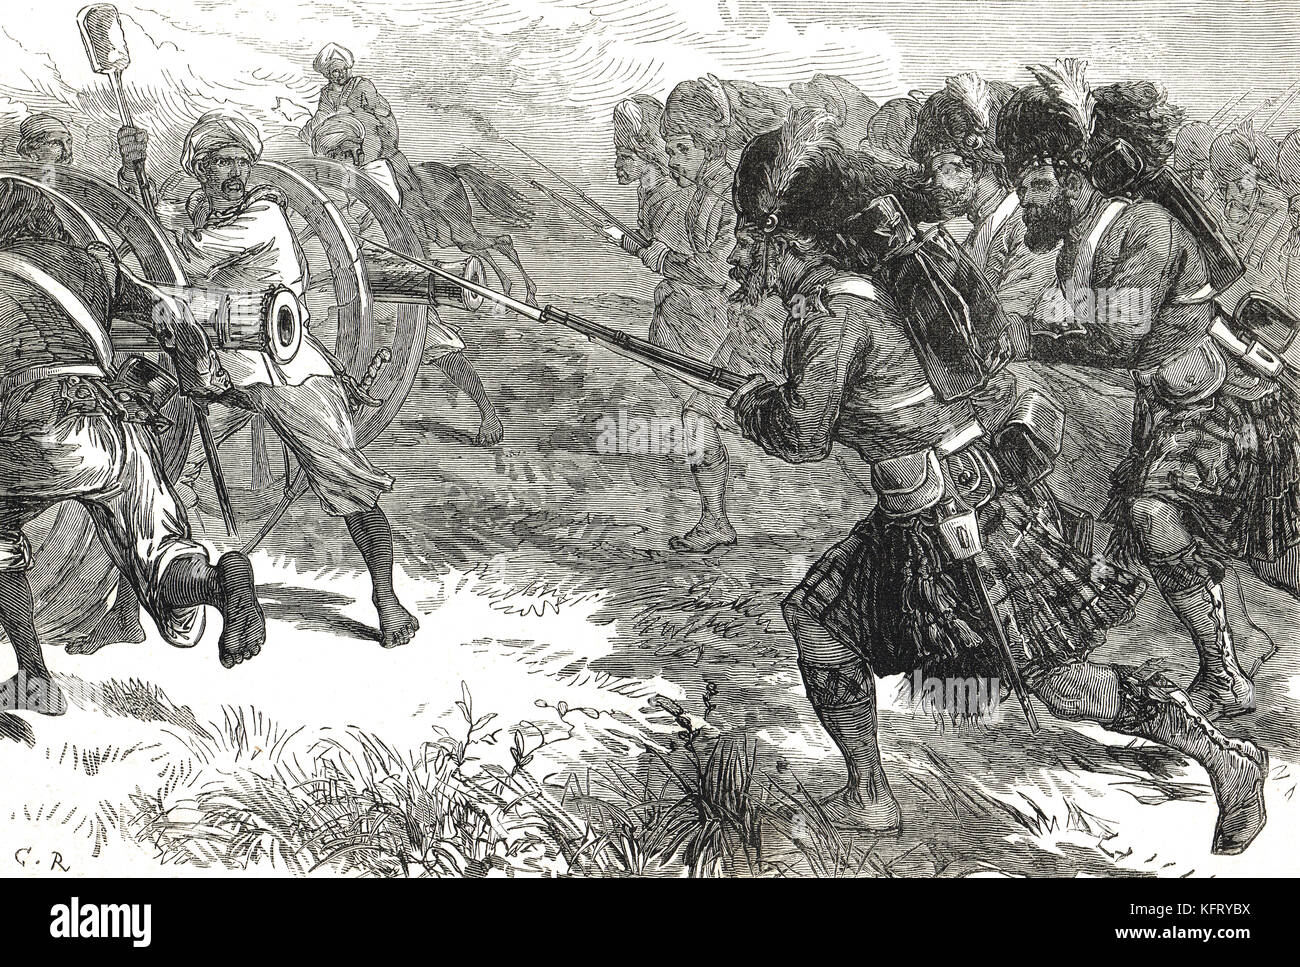 Carica degli Highlanders, India, ribellione indiana del 1857 Foto Stock